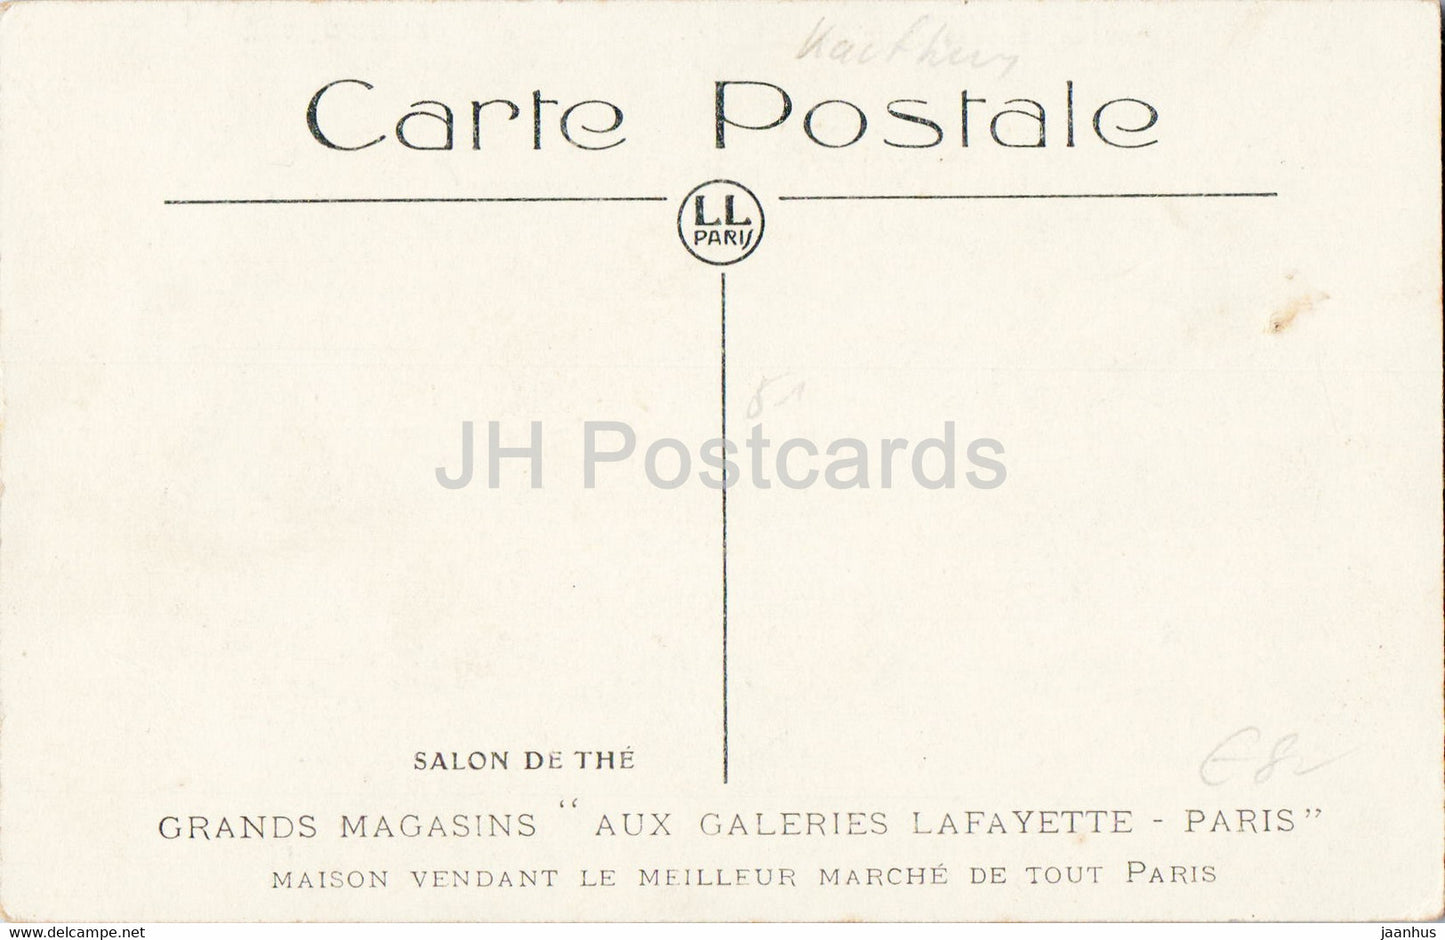 Paris - Salon de The - Grands Magasins Aux Galeries Lafayette - carte postale ancienne - France - inutilisée